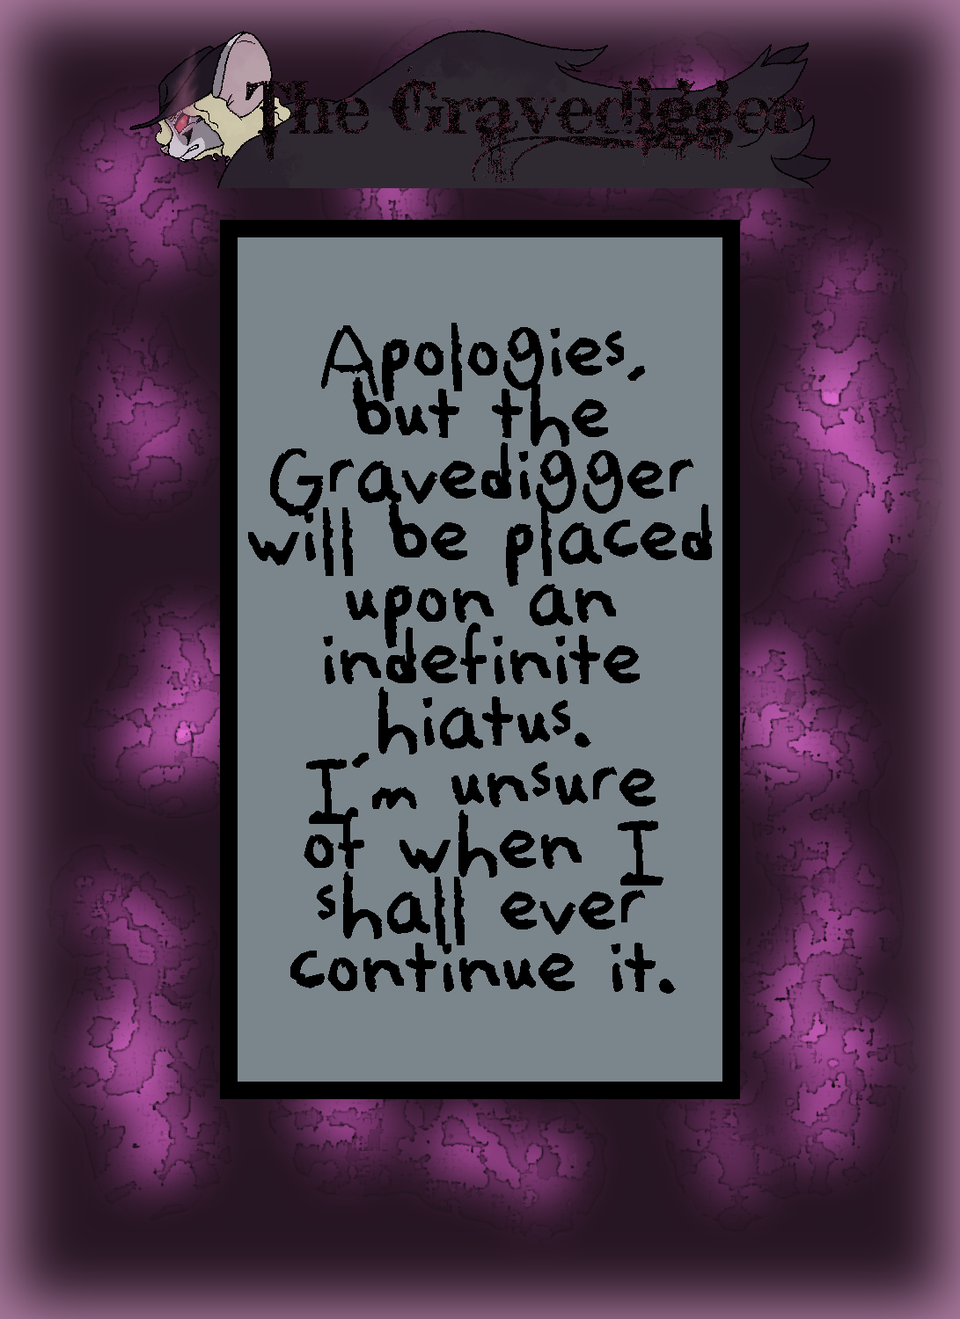 The Gravedigger: Indefinite Hiatus